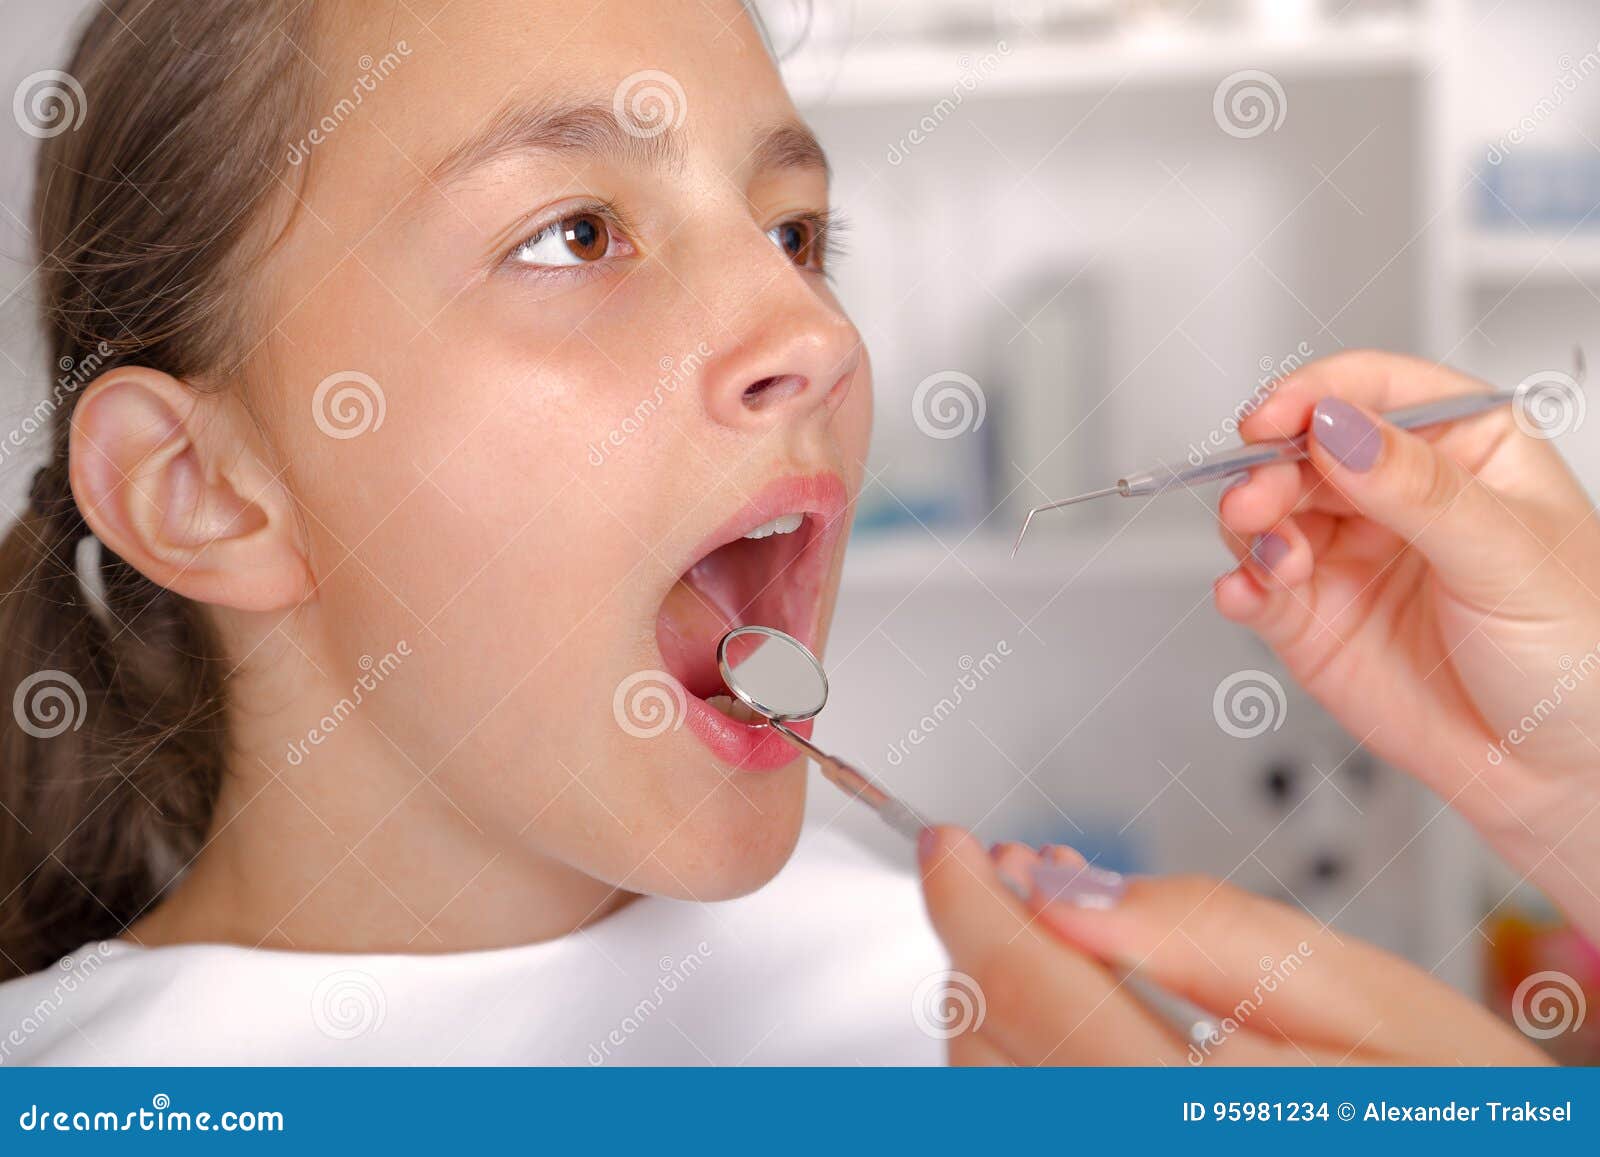 юной девочке сперму в рот фото 34